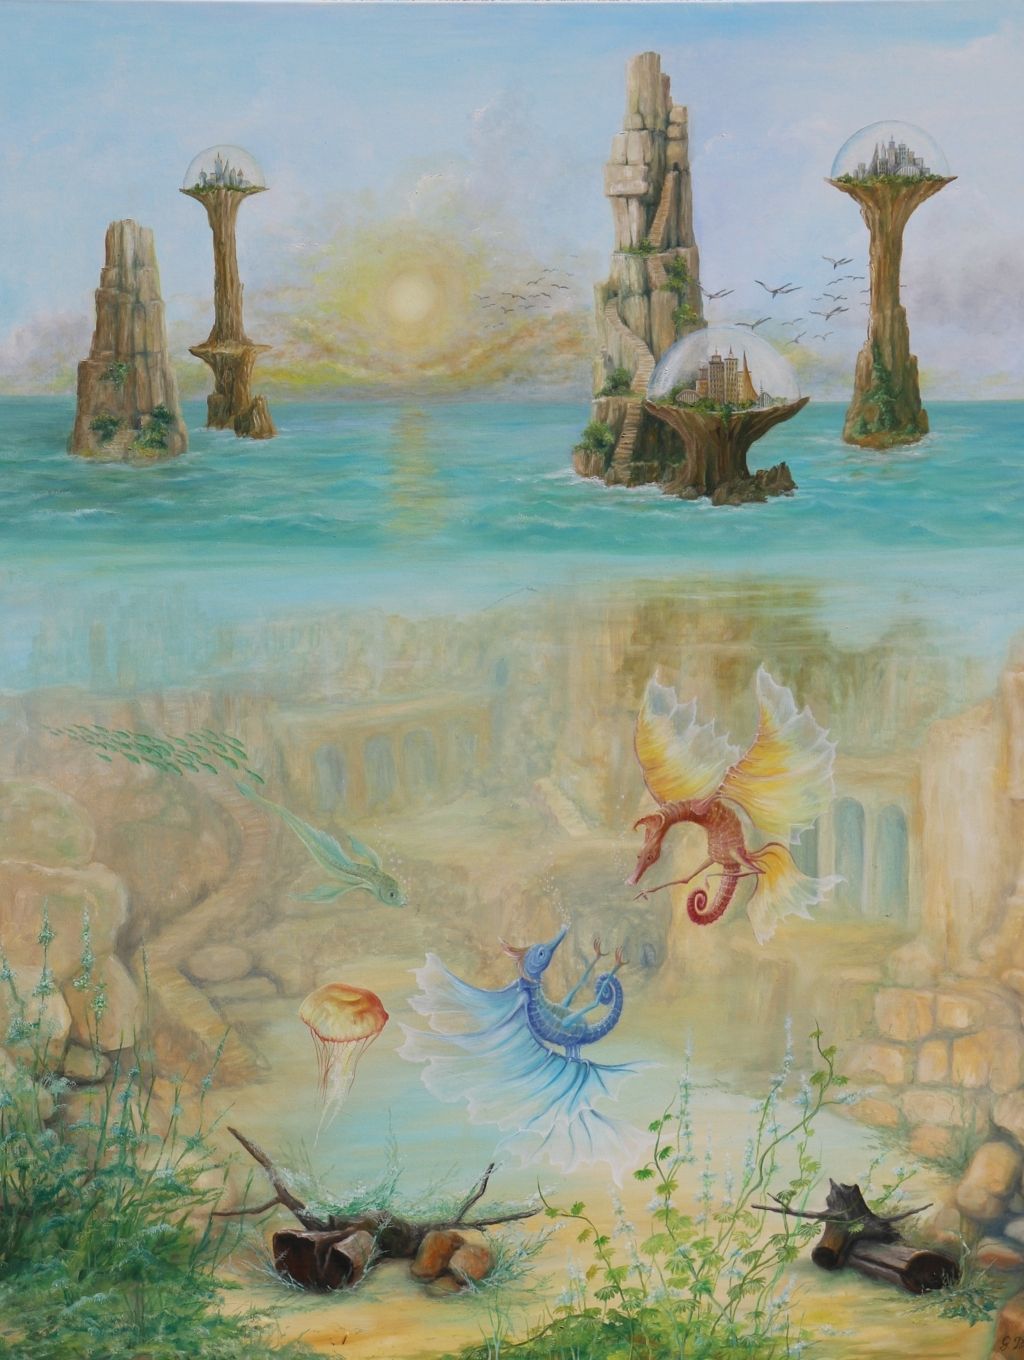 olja på duk, oljemålningar, utställning av målningar,
fantasykonst med surrealistiskt motiv, fantasymålningar med surrealistiskt motiv, Gregory Pyra Piro